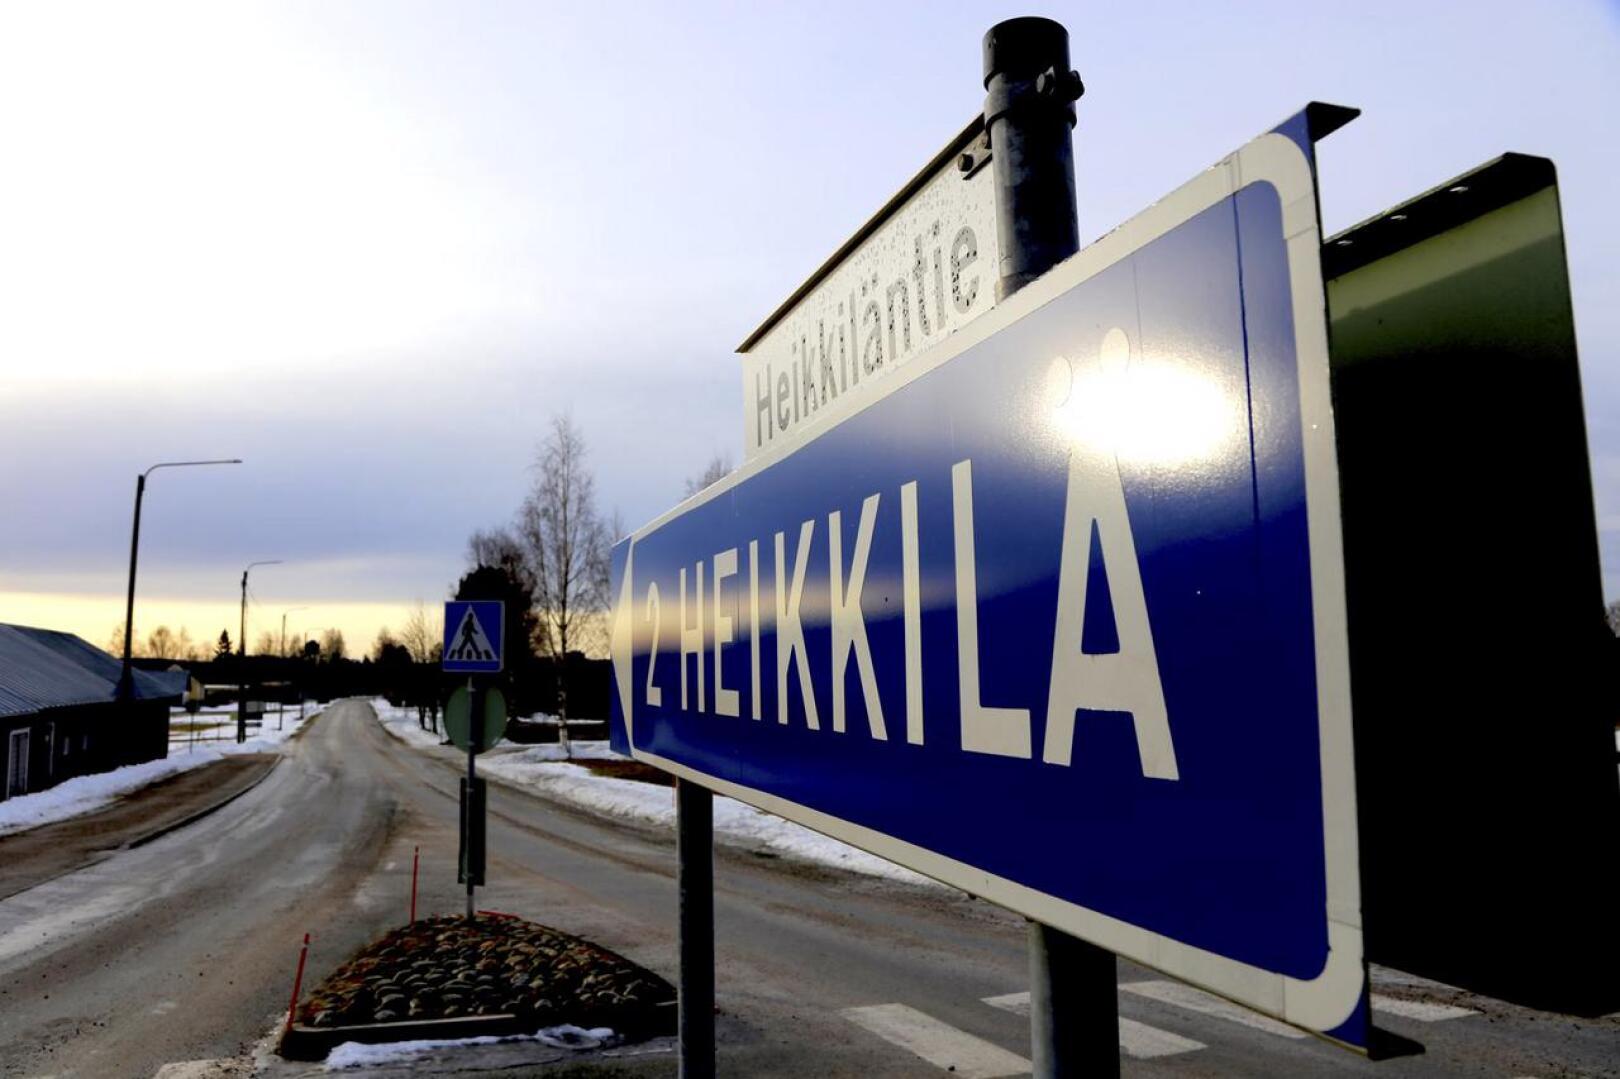 Heikkiläntien liikenneturvallisuus herättää aika ajoin keskustelua Vetelissä. Perjantaina tiellä sattui kahden henkilöauton kolari, kun toinen autoista väisti koululaista. 